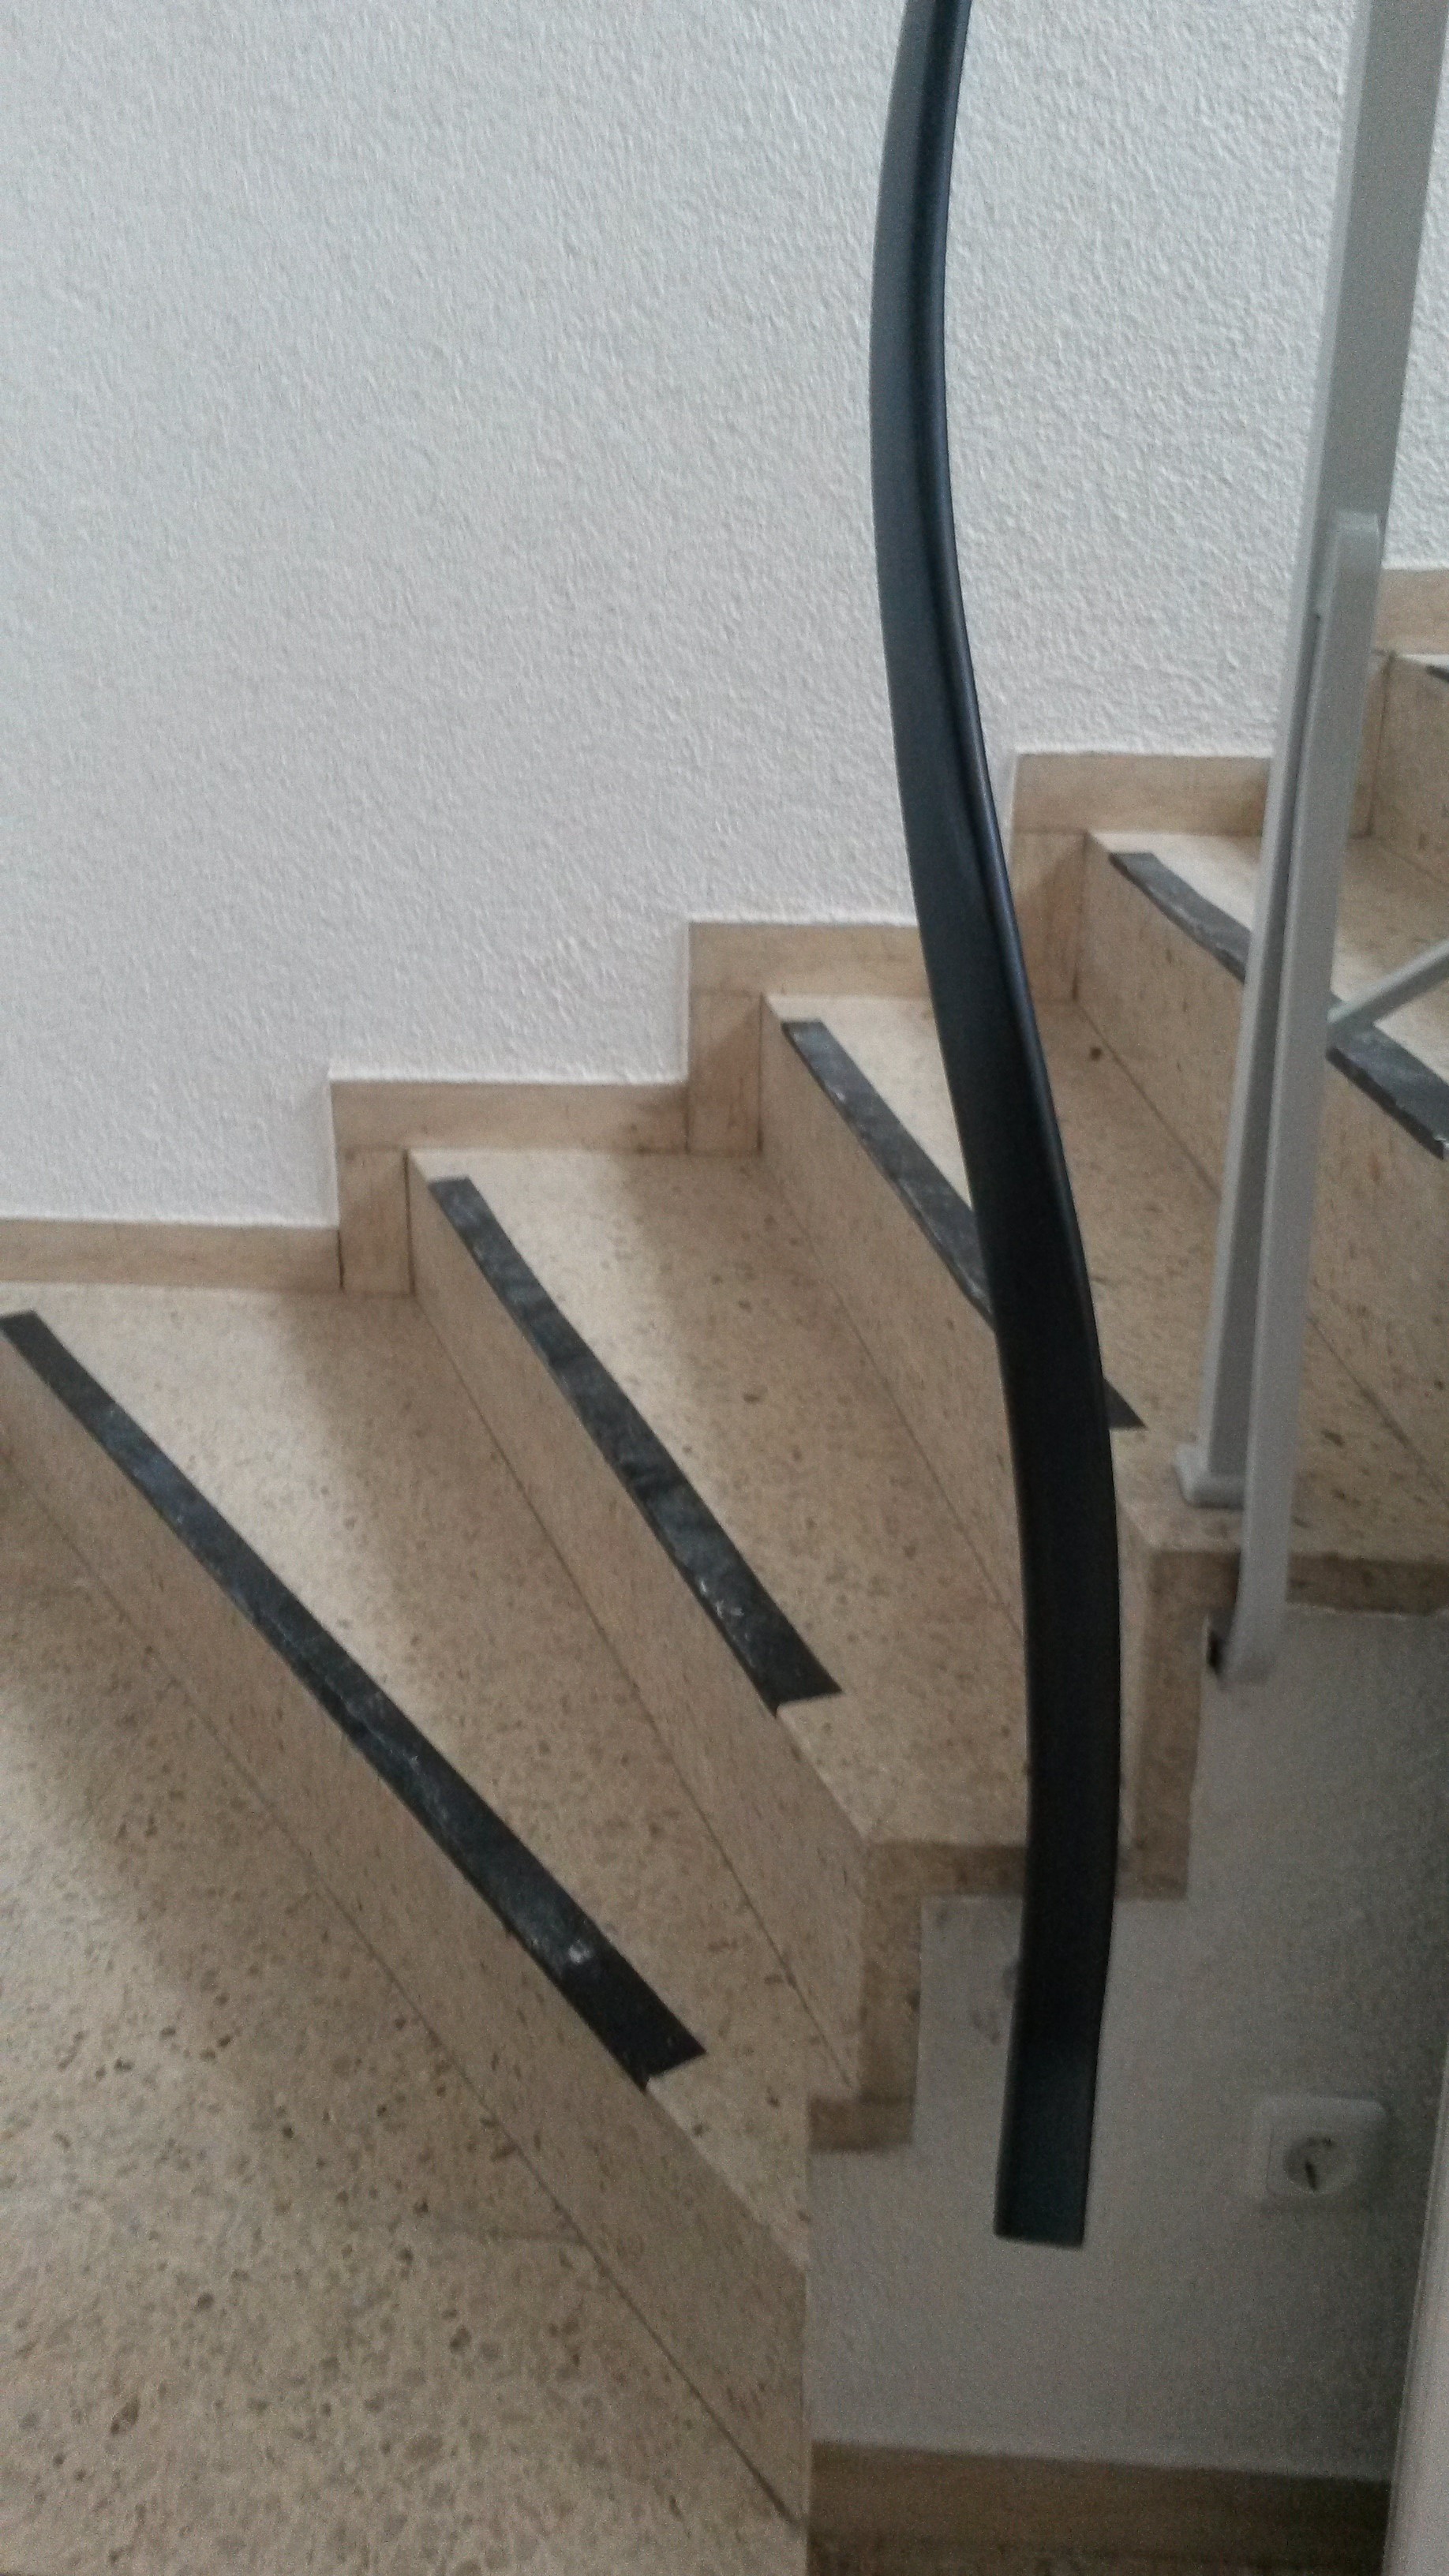 Handlauf aus Kunststoff am Treppenantritt